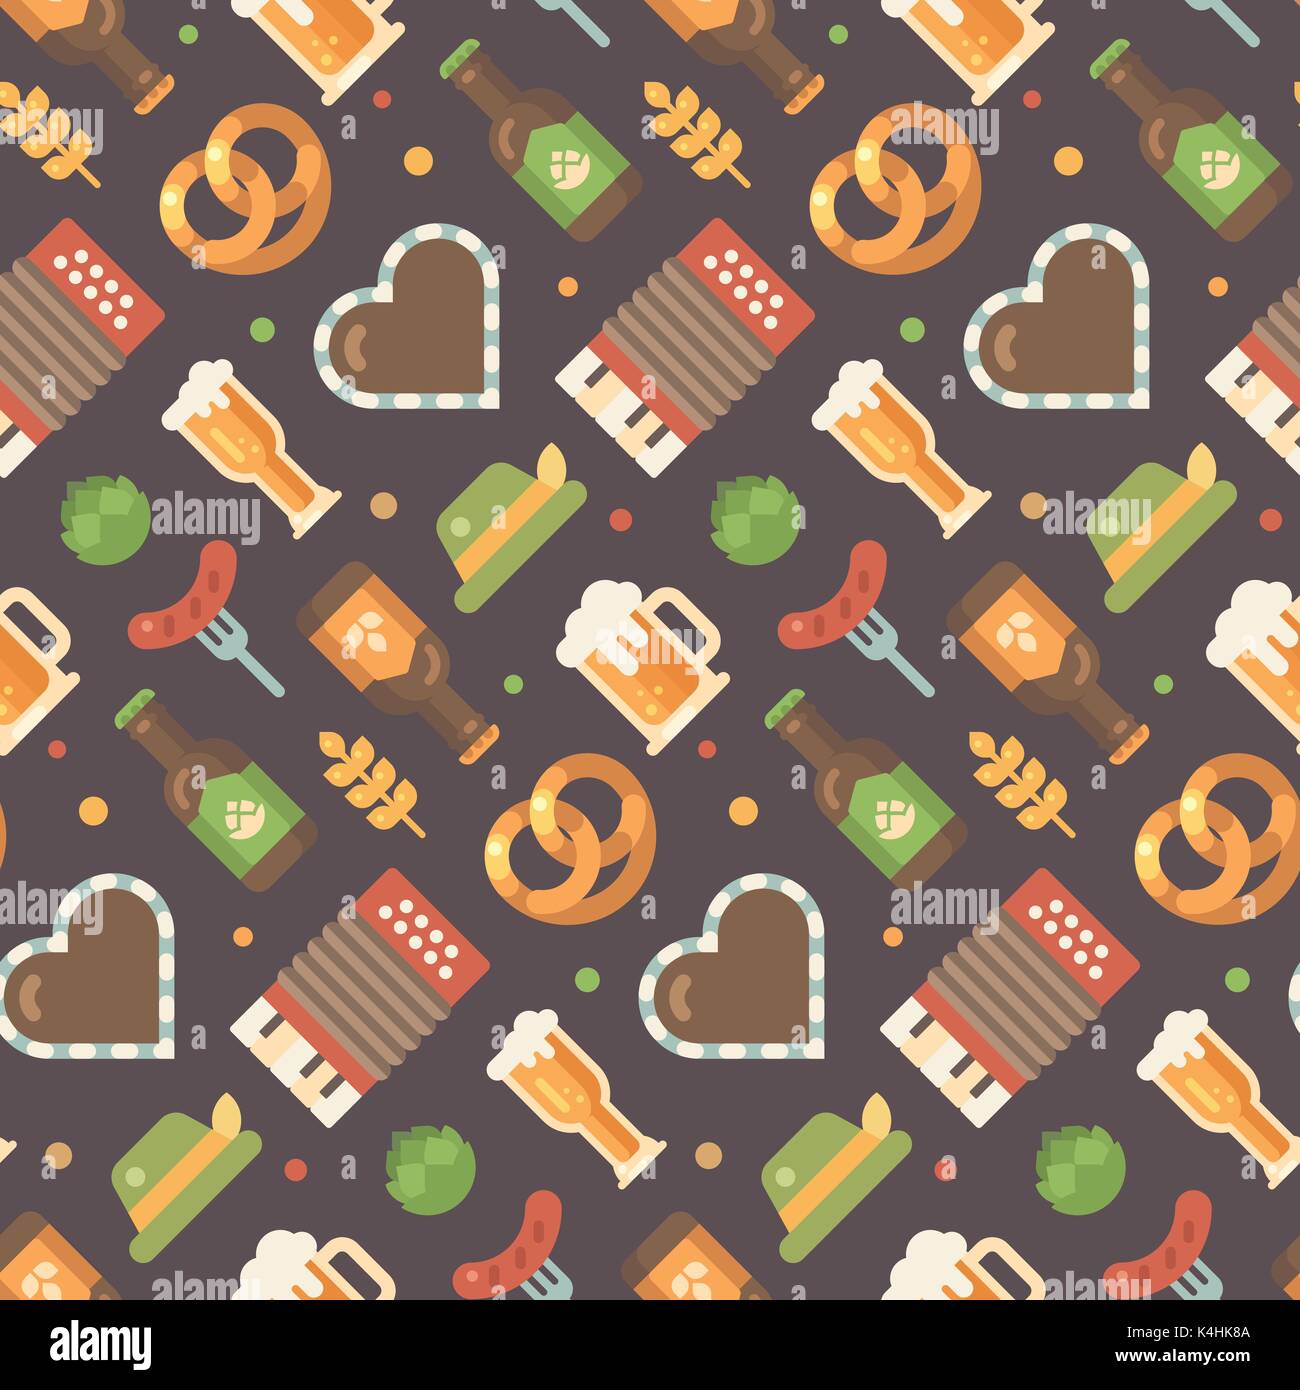 Oktoberfest flachbild Symbole Muster. Beer Festival Muster auf dunklem Hintergrund. Lebkuchenherz, Akkordeon, Würstchen auf eine Gabel, Bierkrug, Bierflasche, hop, Stock Vektor